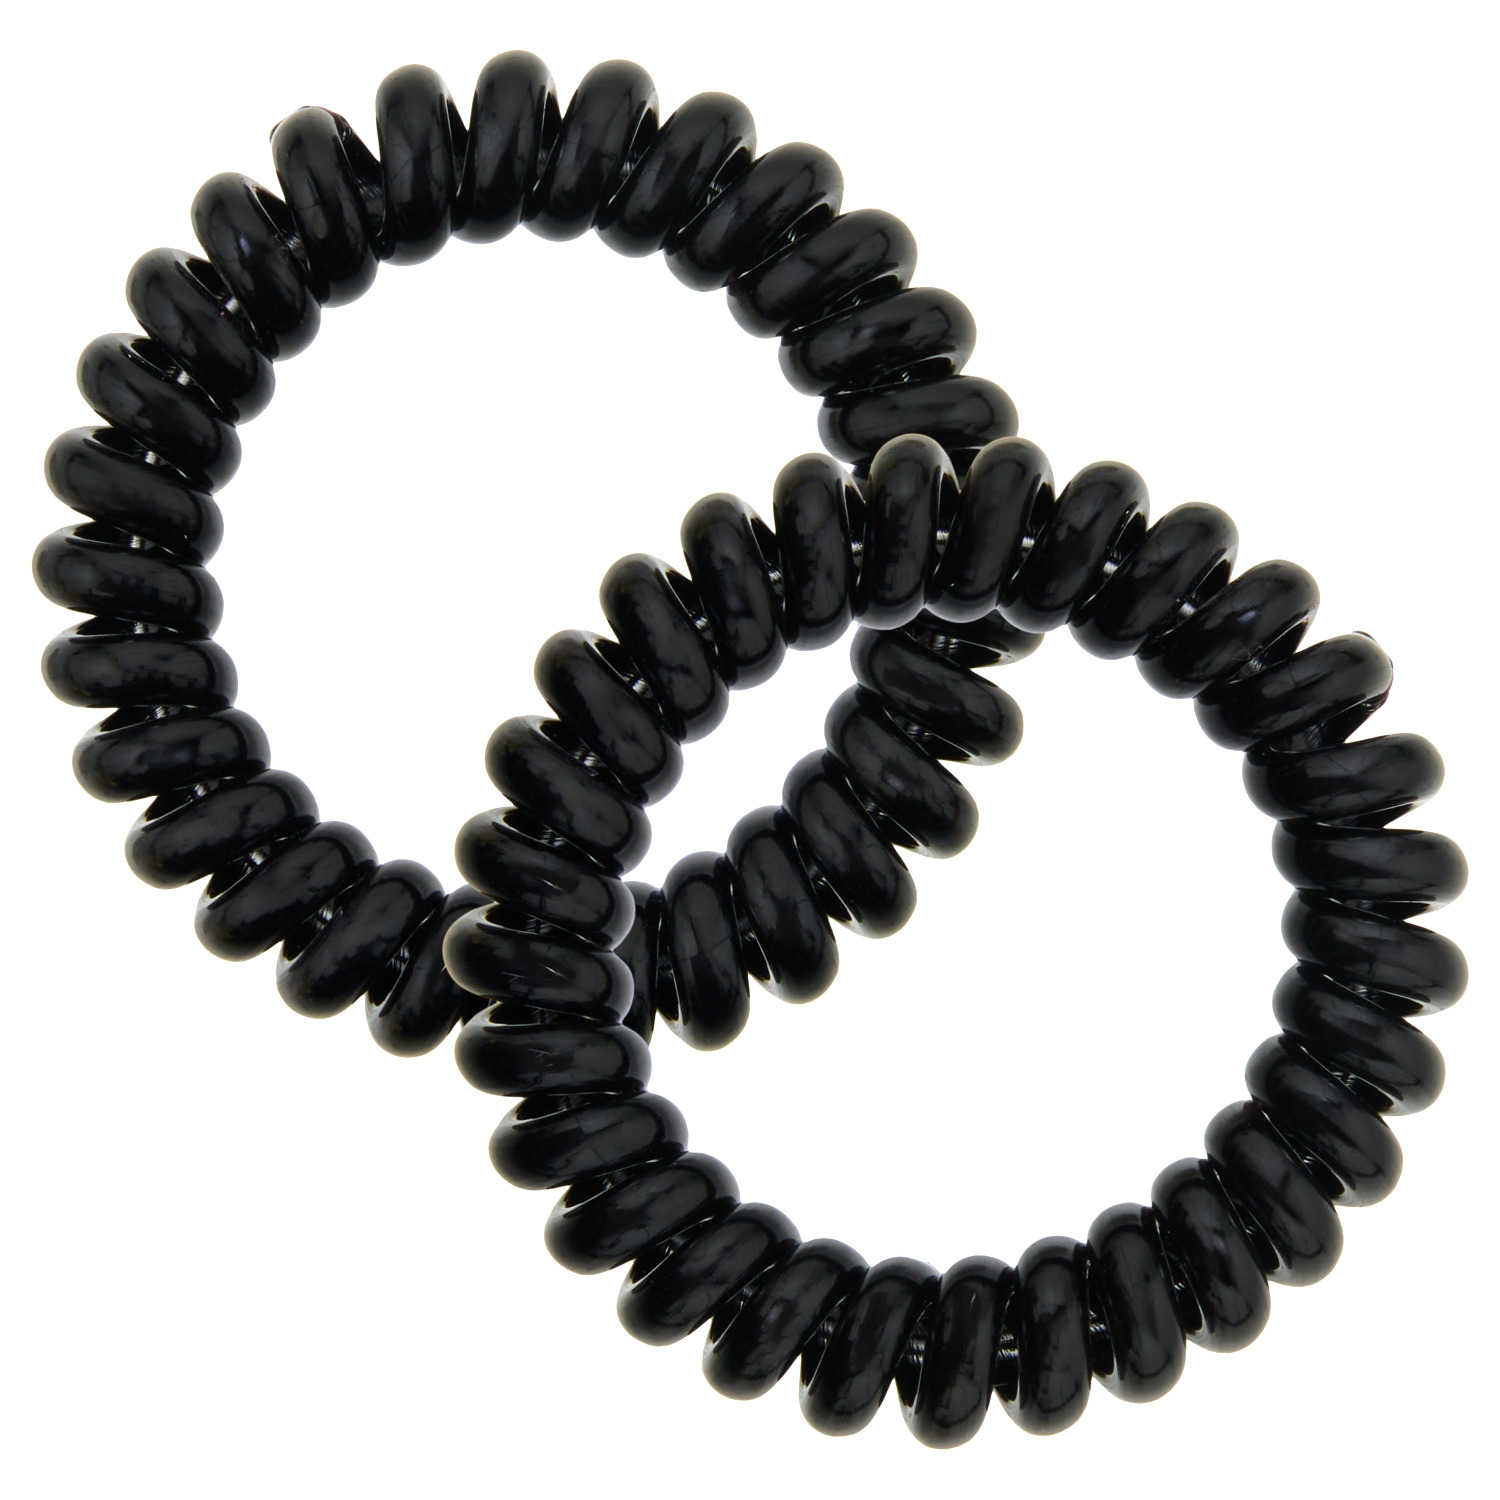 Cable elastics black, 2 pieces